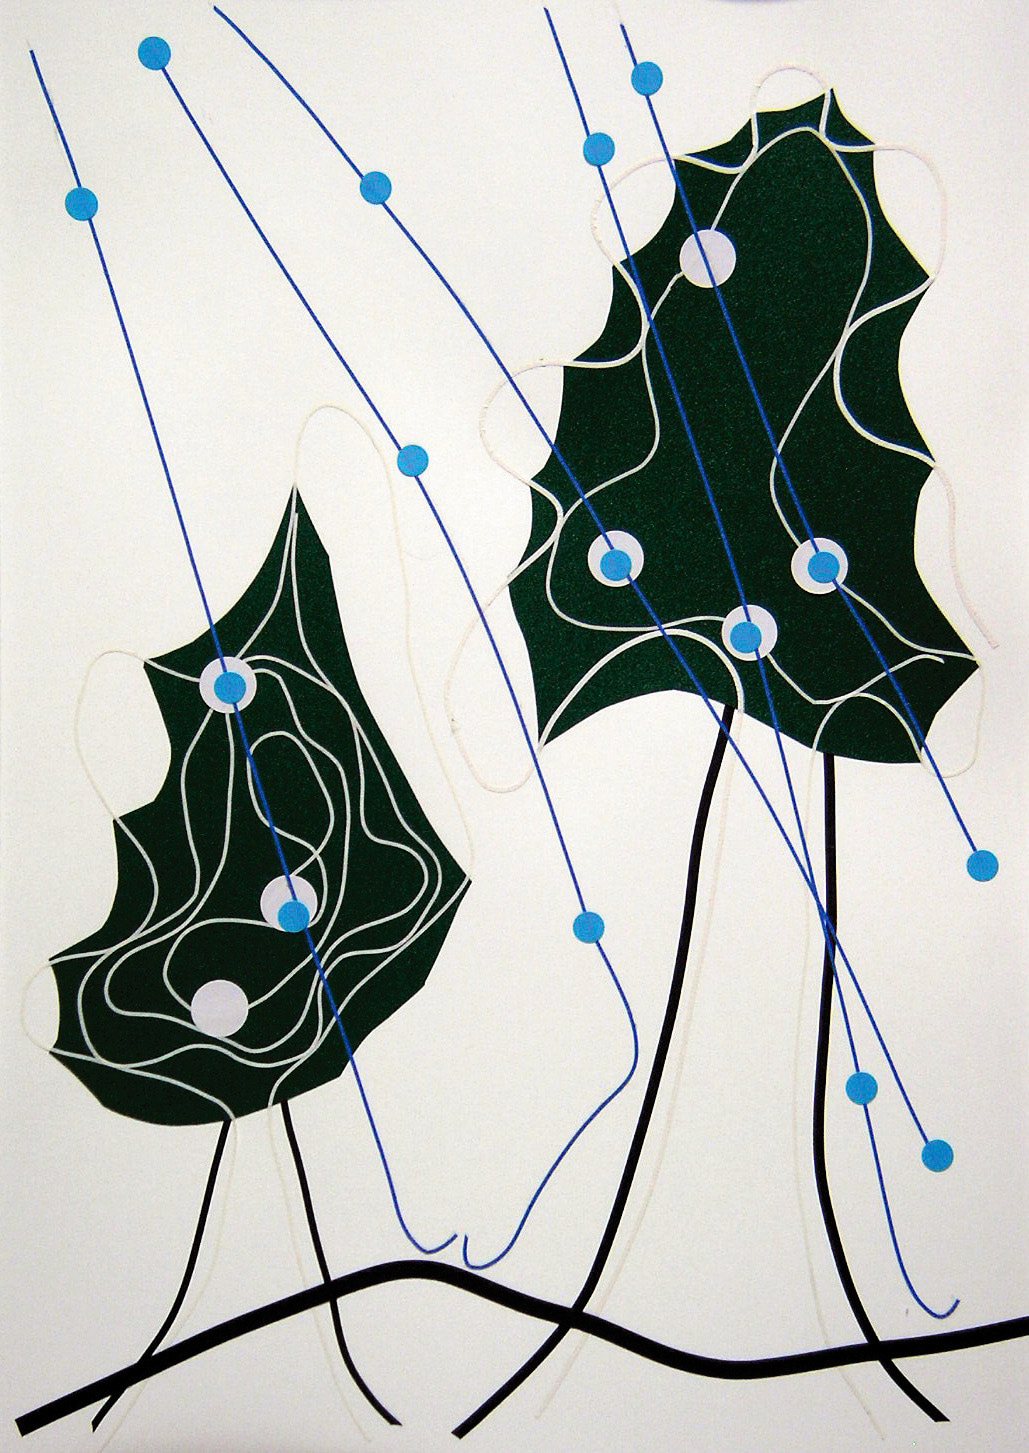 光島さんの雨の木という作品の写真です。雨が青い丸と線で表現されています。